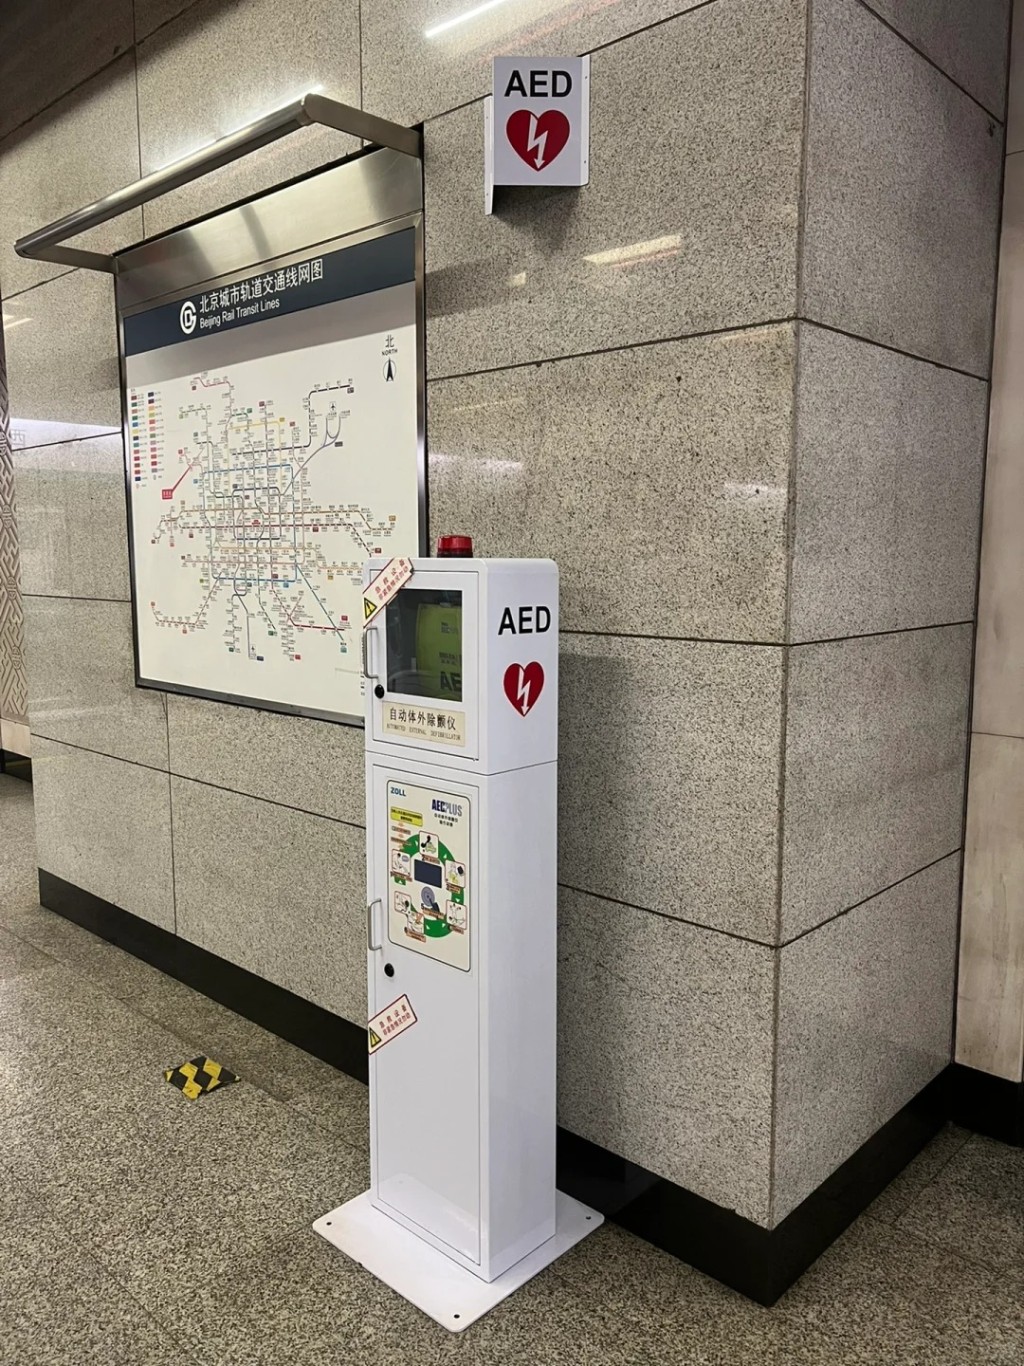 內地許多公眾地方也配備了AED設備。小紅書